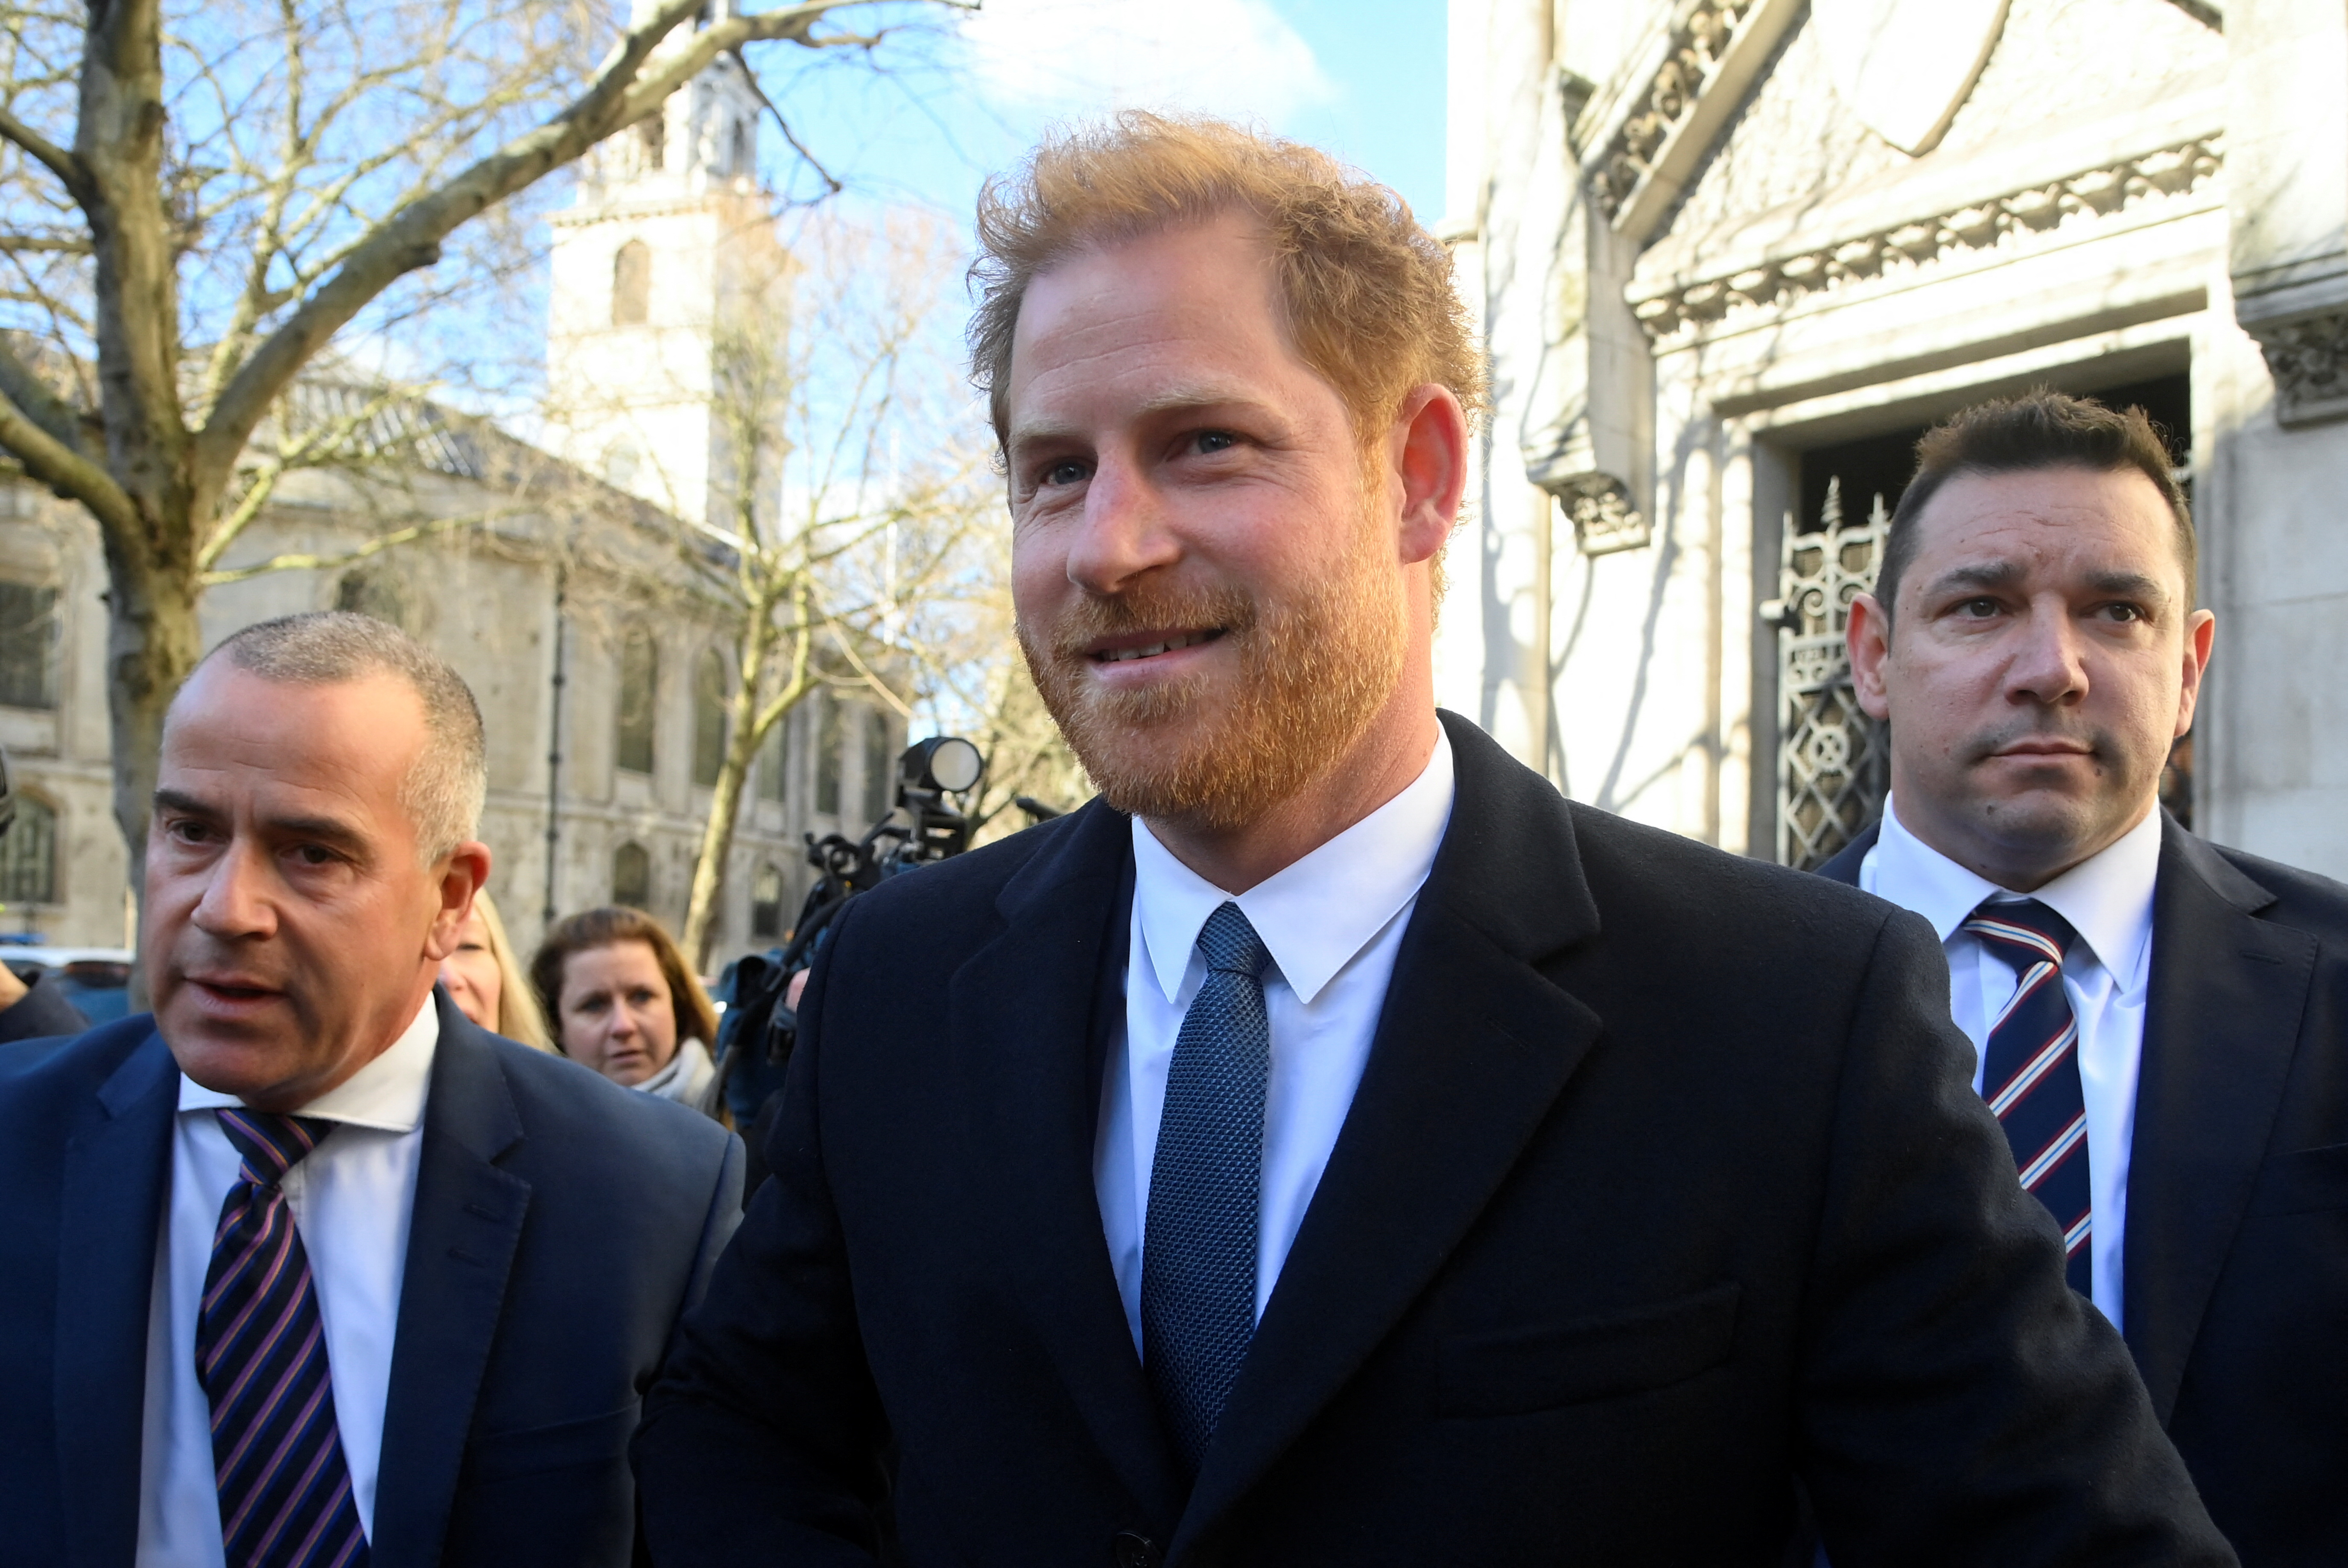 El príncipe Harry se presentó ante una corte de Londres por una denuncia de difamación contra un diario británico